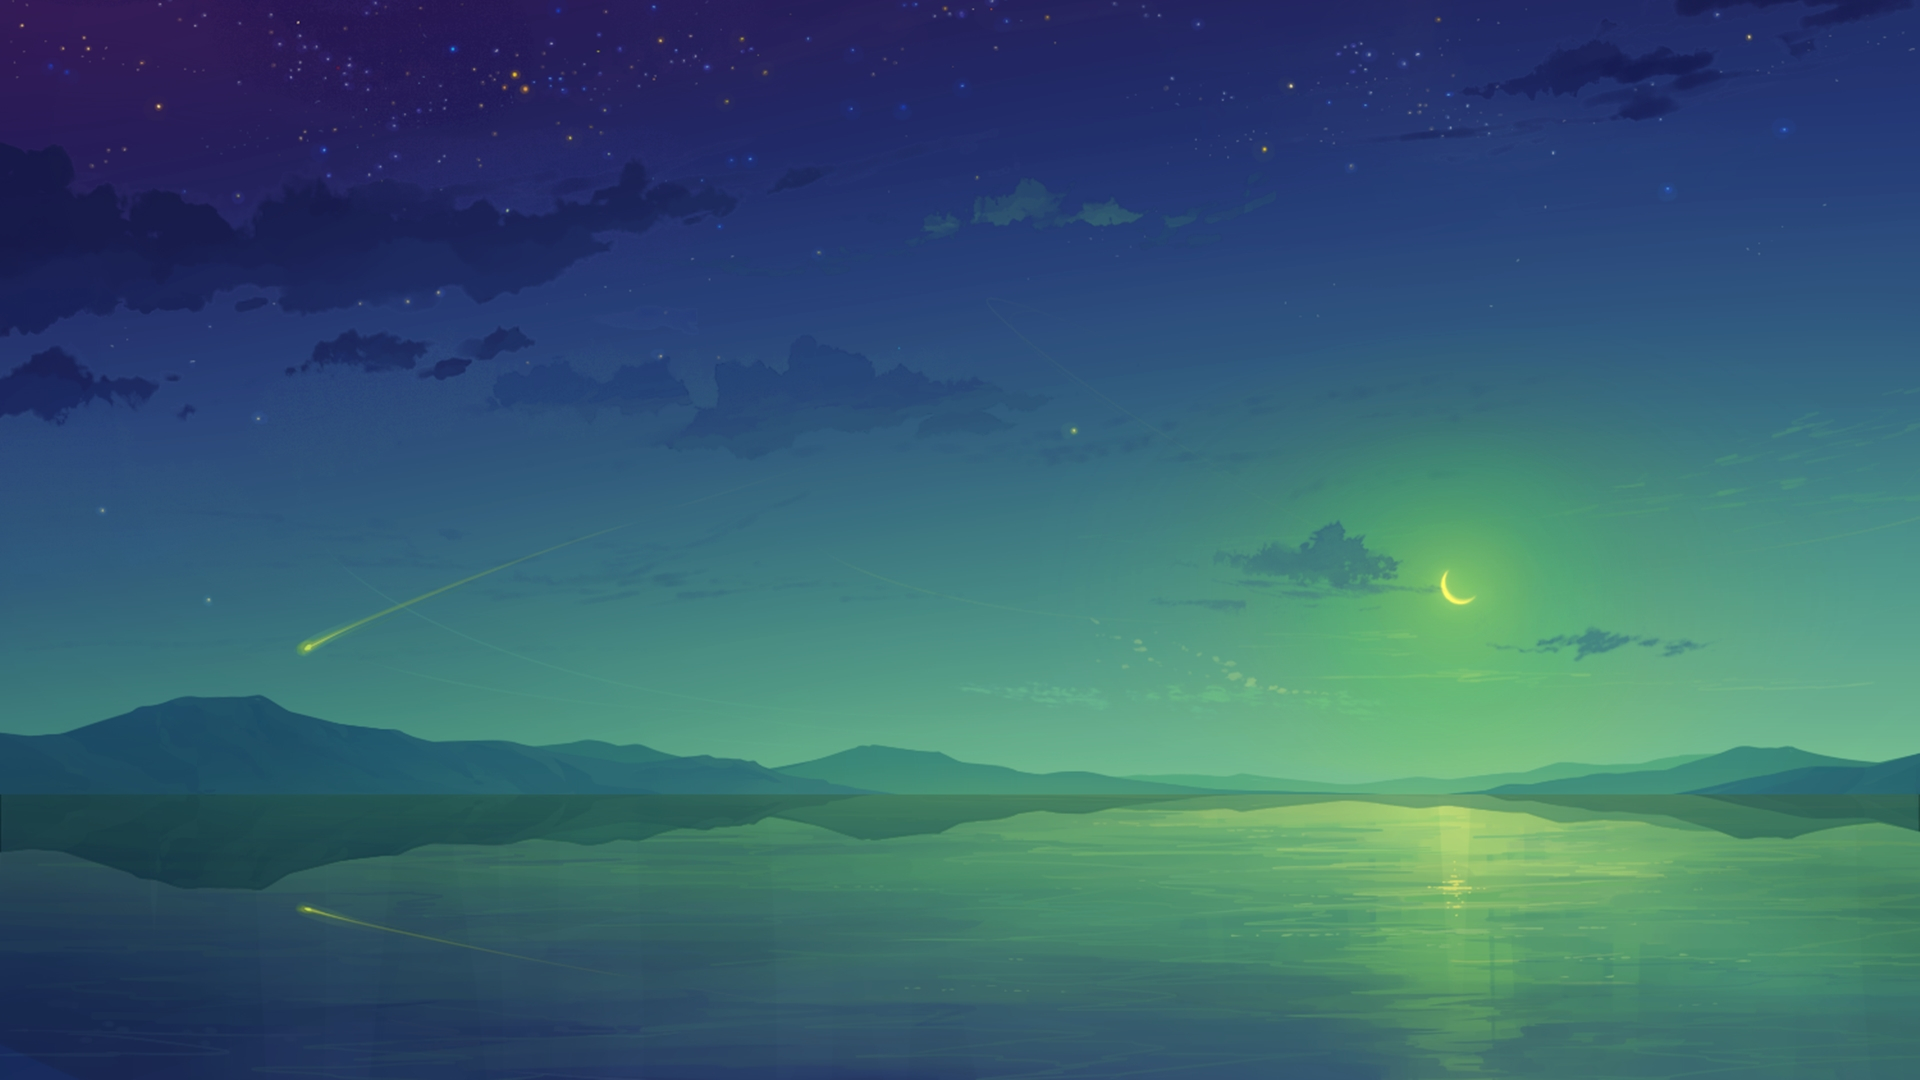 夜空の壁紙,空,自然,青い,緑,雰囲気